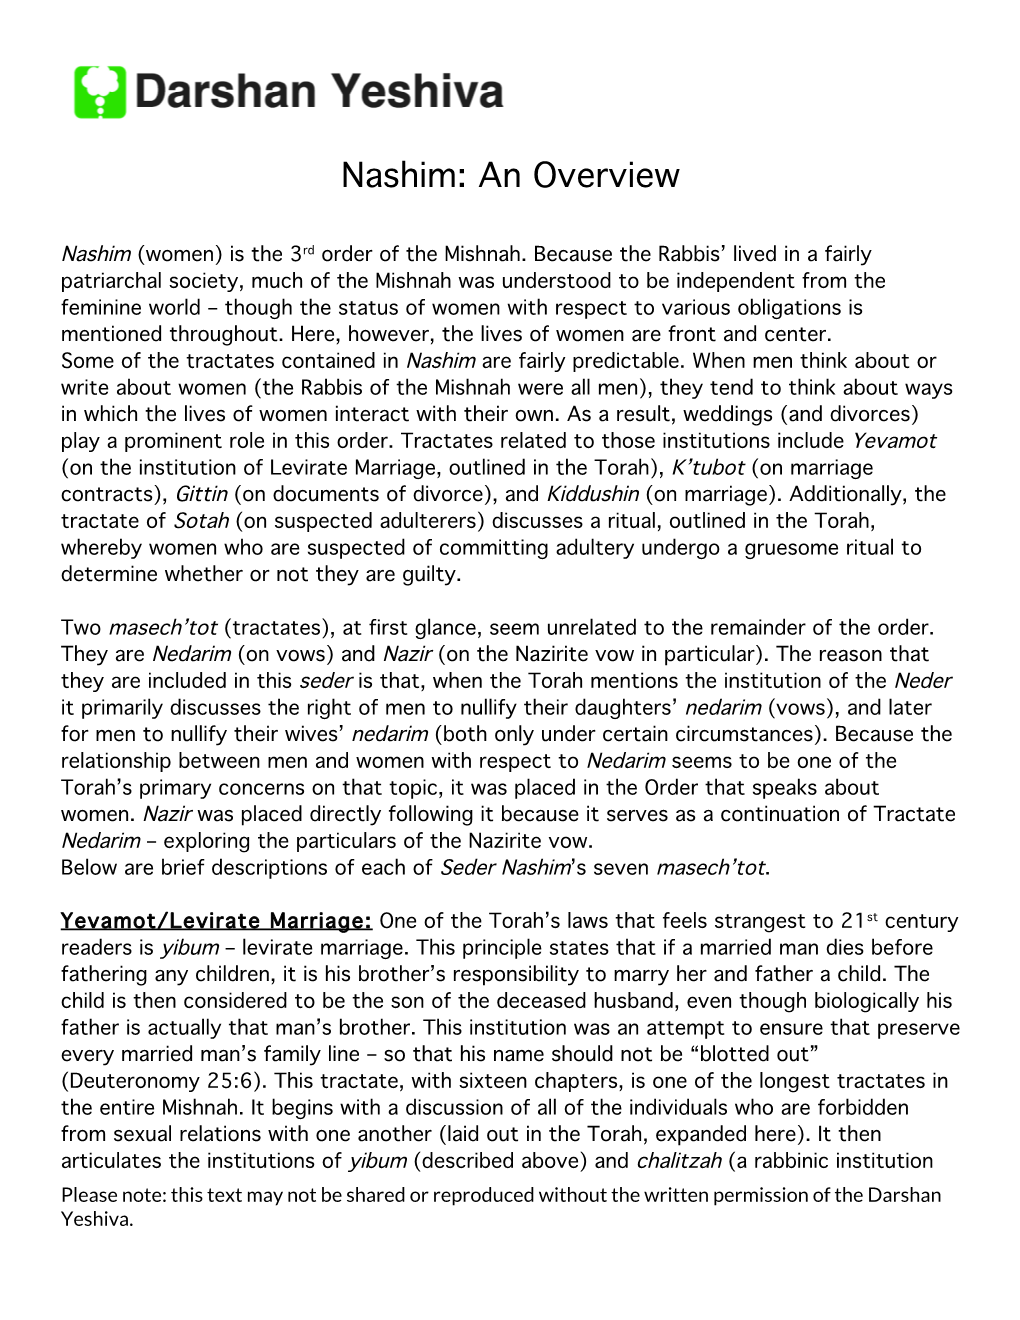 Nashim: an Overview